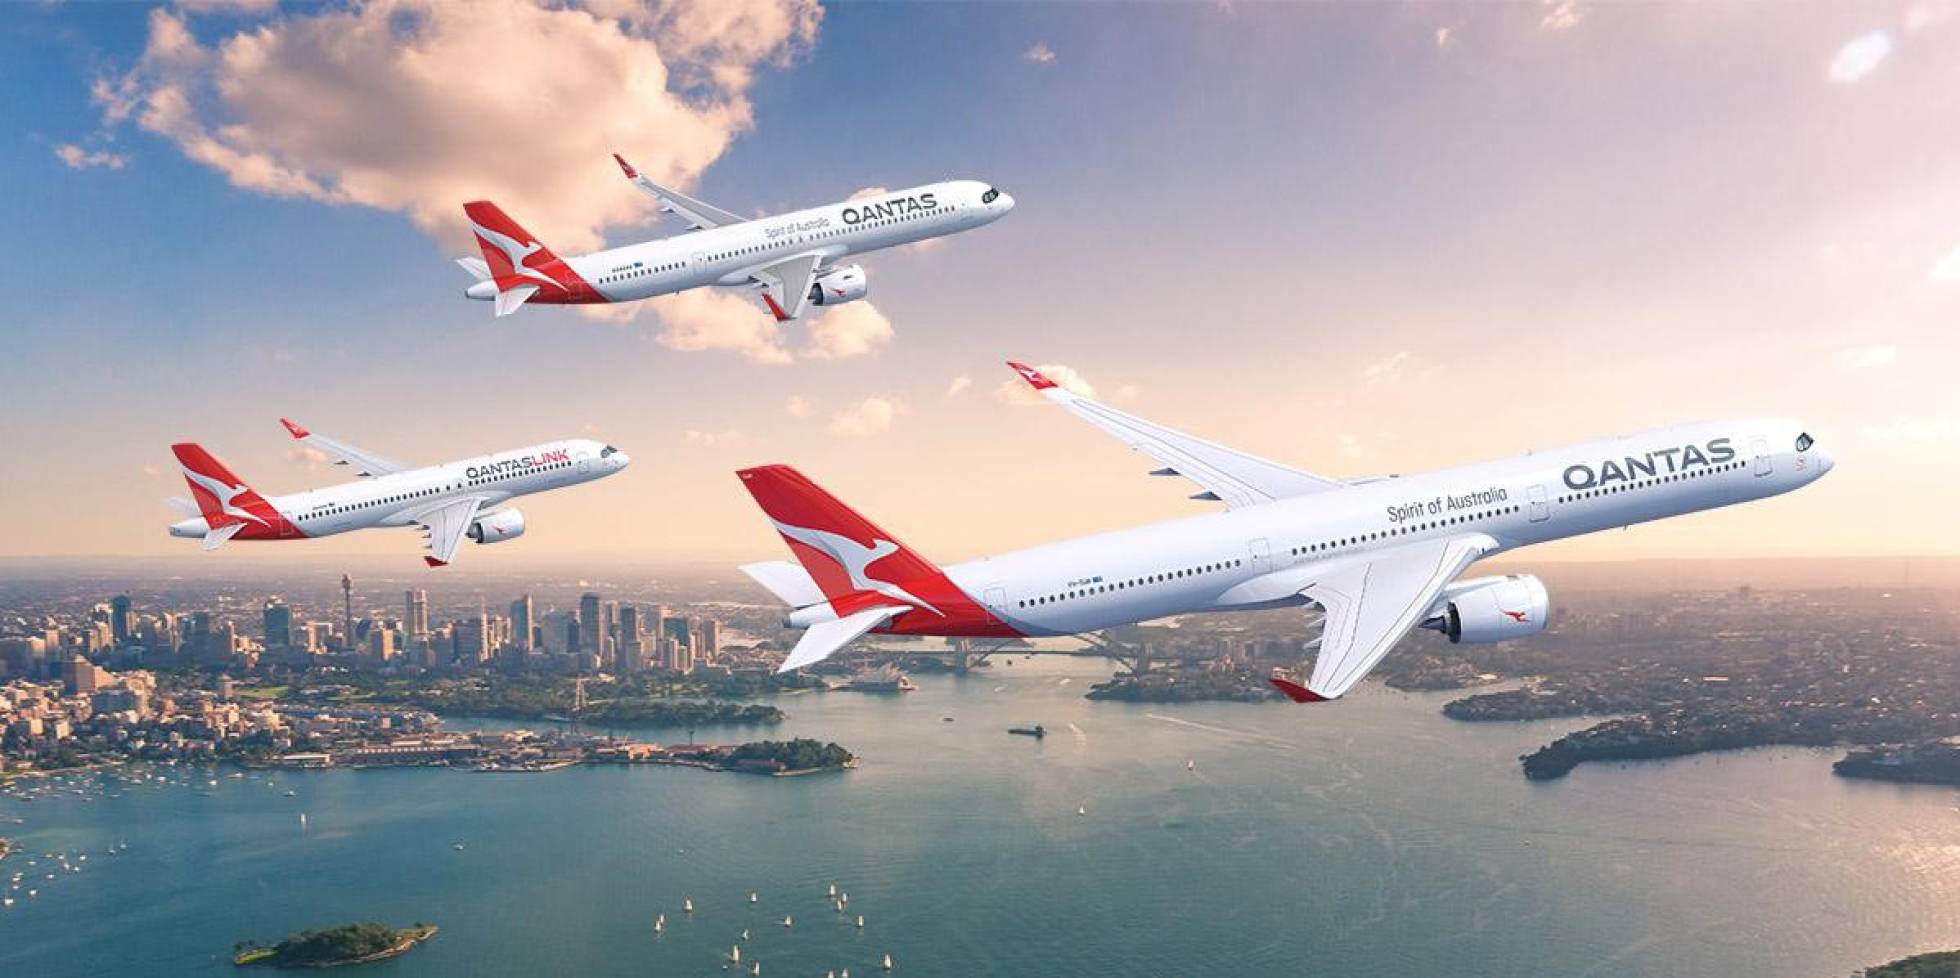 Qantas compra 52 aviones a Airbus para reforzar una flota con dominio de Boeing